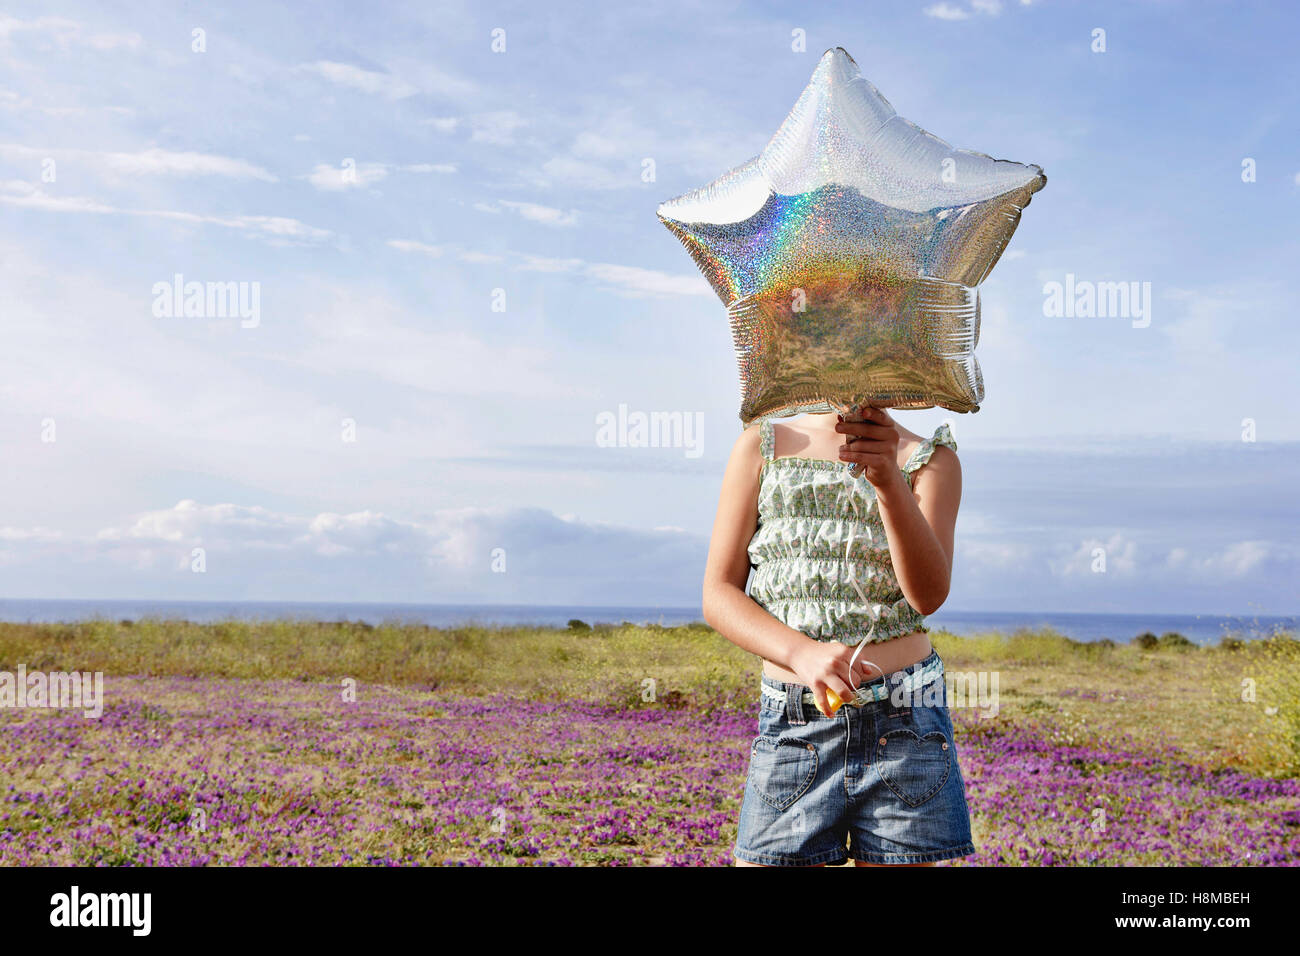 Vorderansicht des vorpubertären Mädchen hält Sterne geformt Ballon vor ihr Gesicht im stehen am Blumenfeld Stockfoto